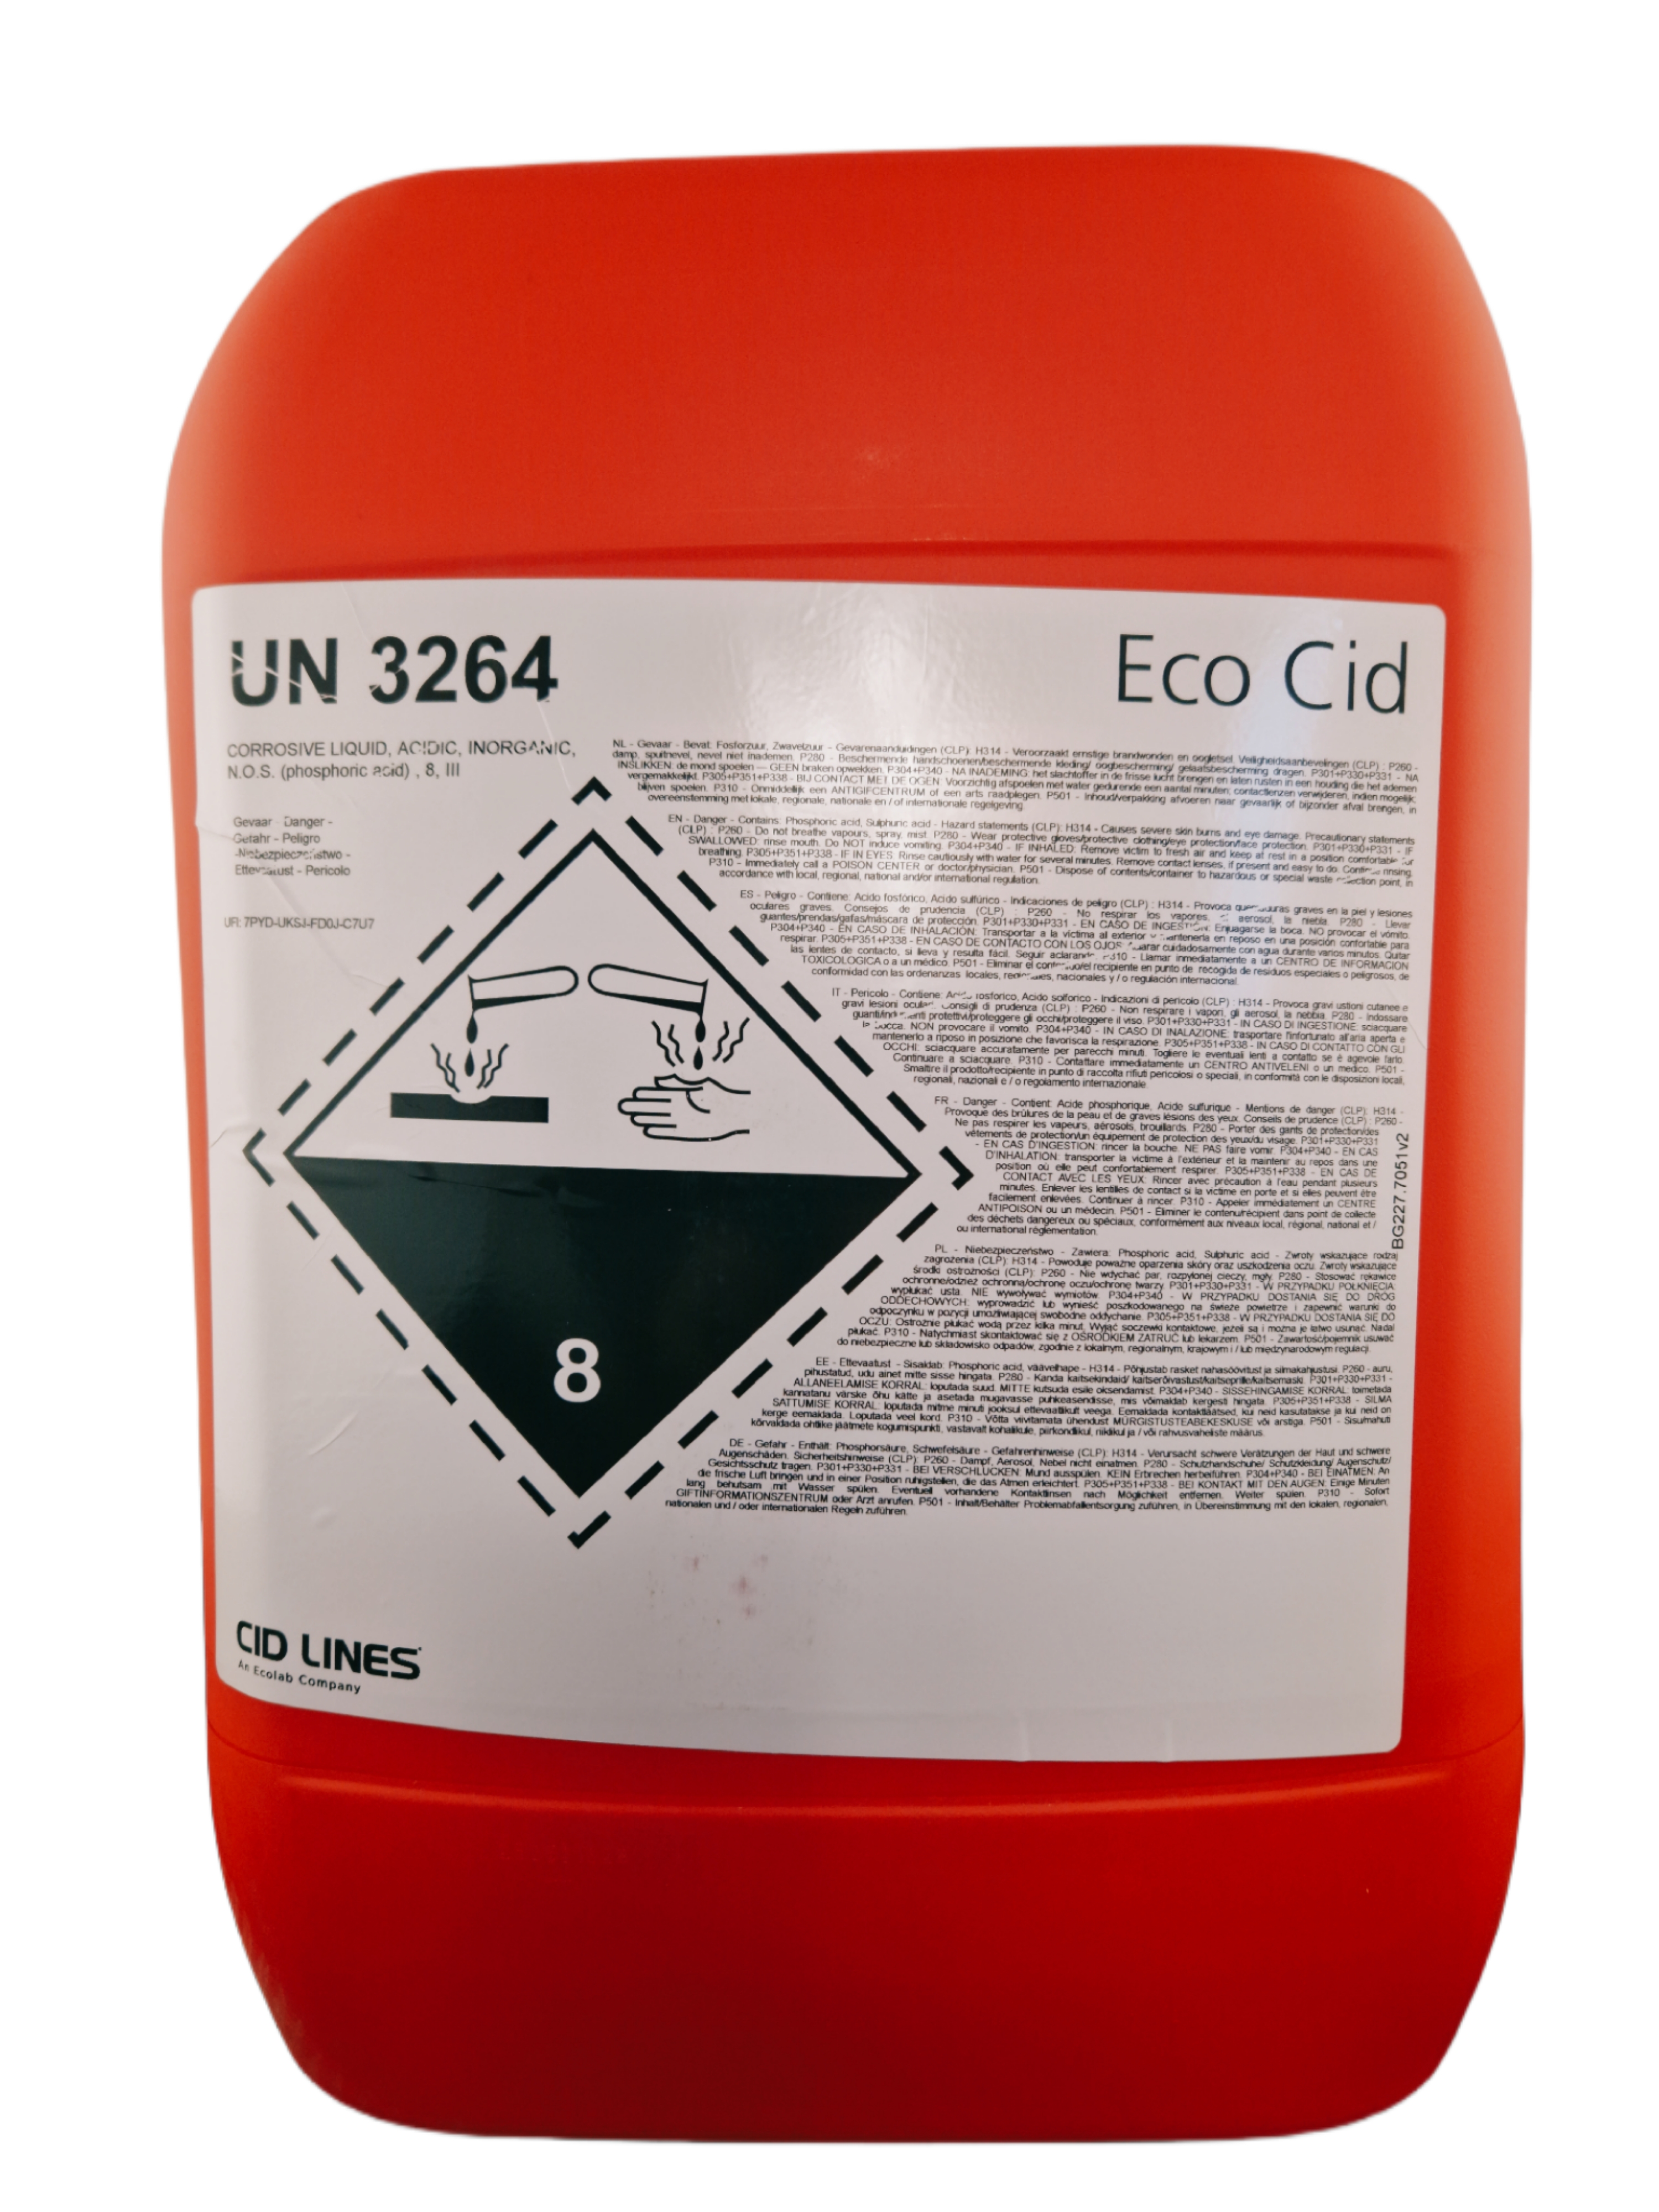 Cid Lines - Eco Cid saures Reinigungsmittel (ohne QAV)